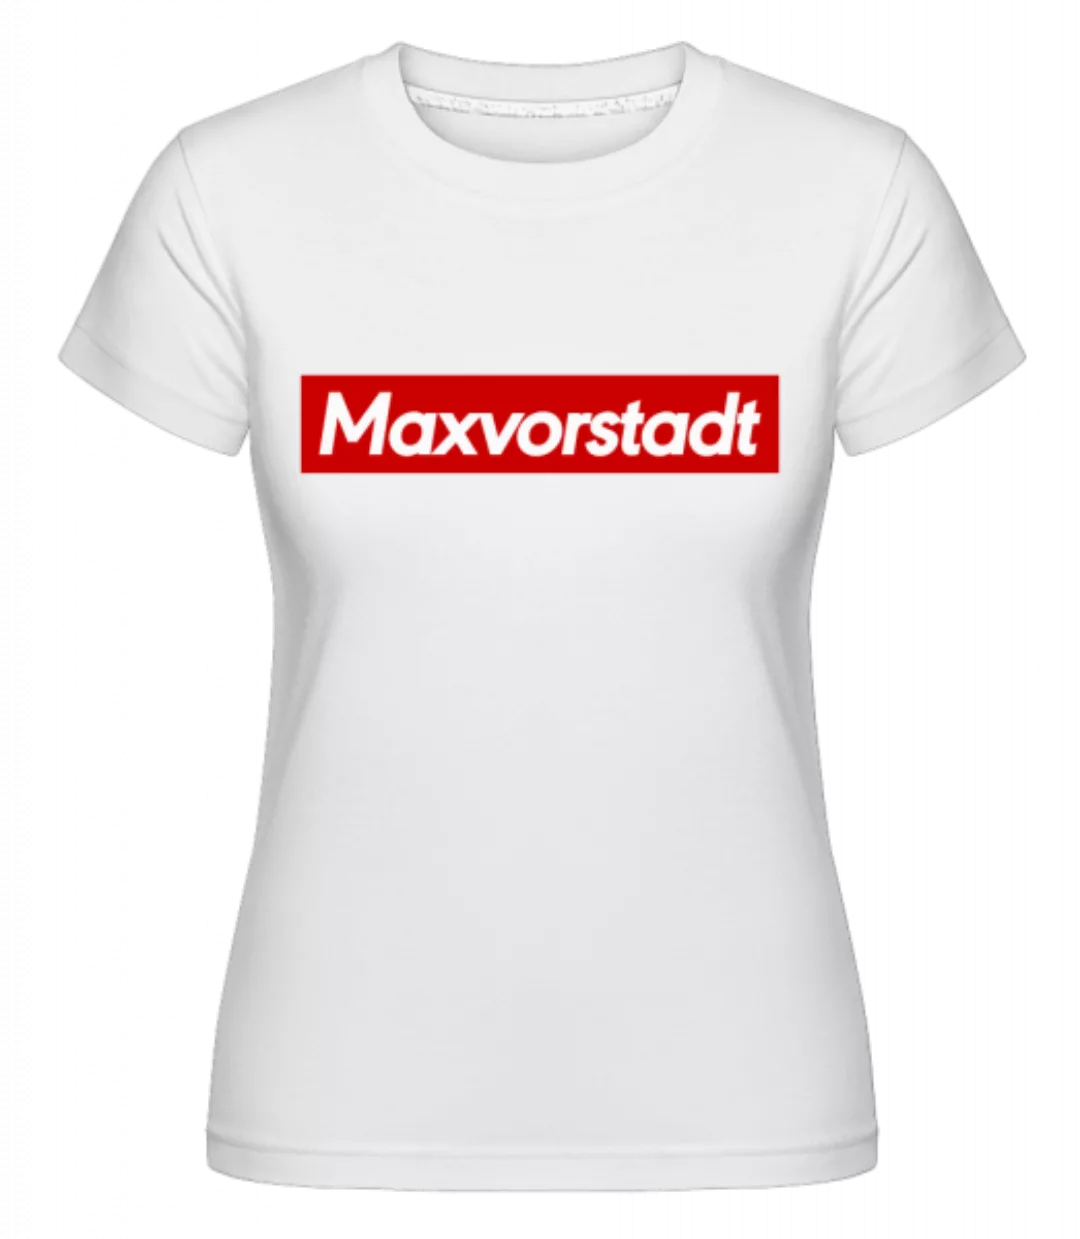 Maxvorstadt · Shirtinator Frauen T-Shirt günstig online kaufen